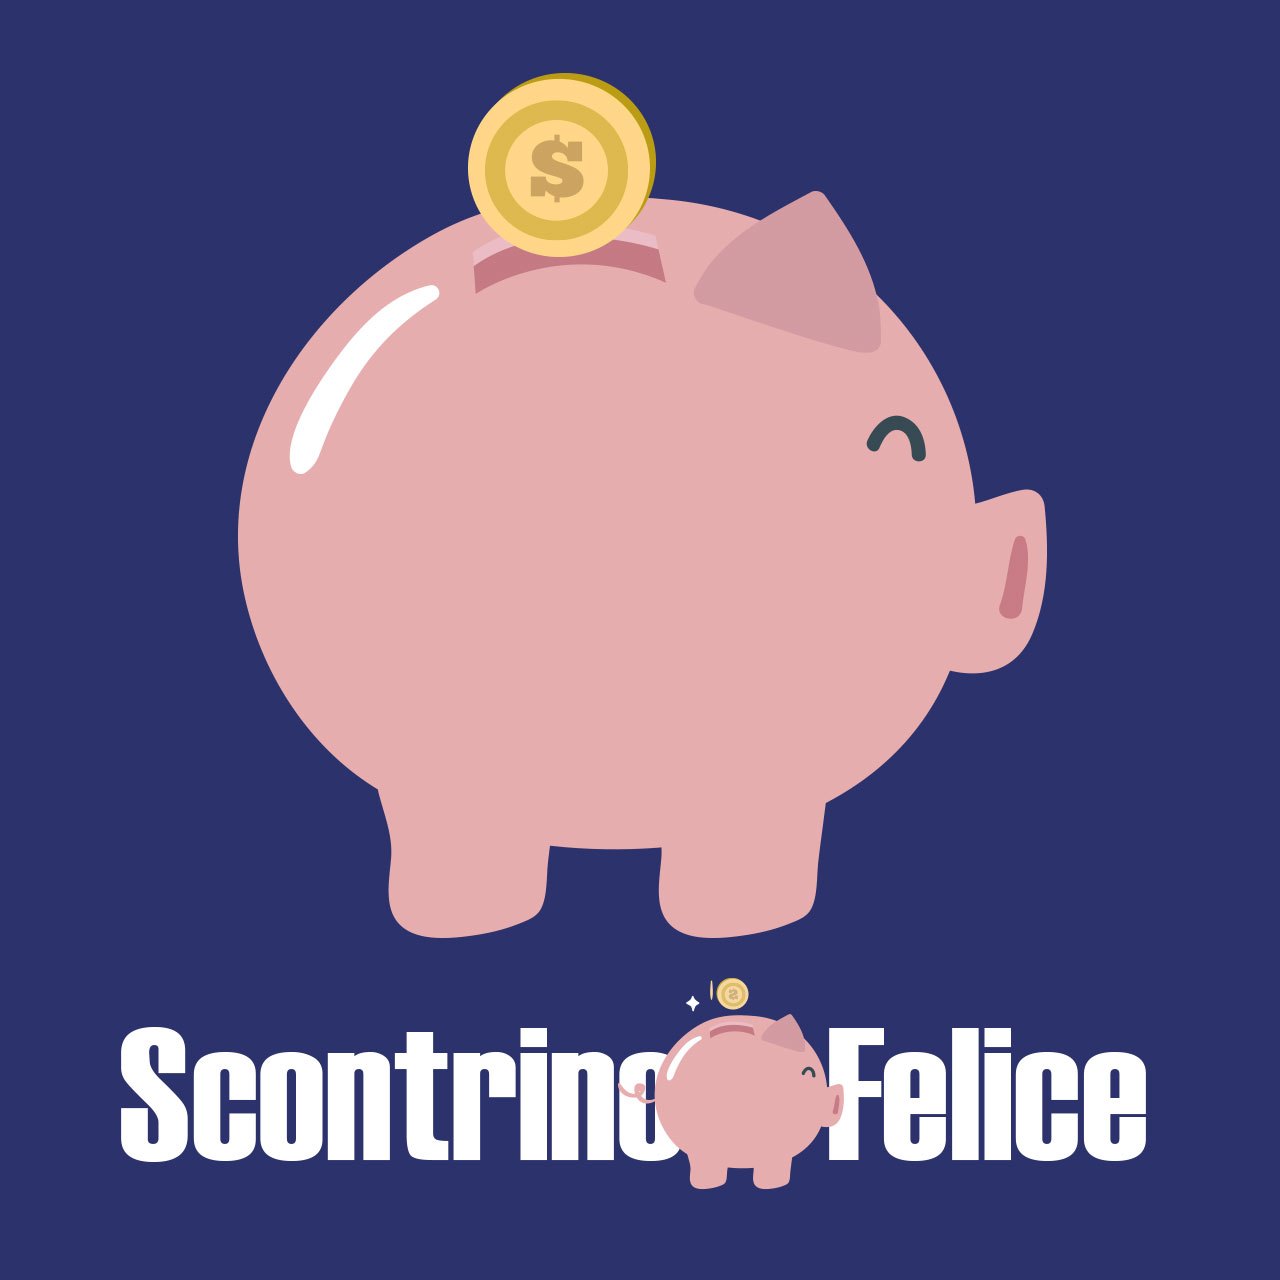 Spendi e Riprendi Scottex “Prova gratis il nuovo Scottex Amore di Casa:  100% Cashback”